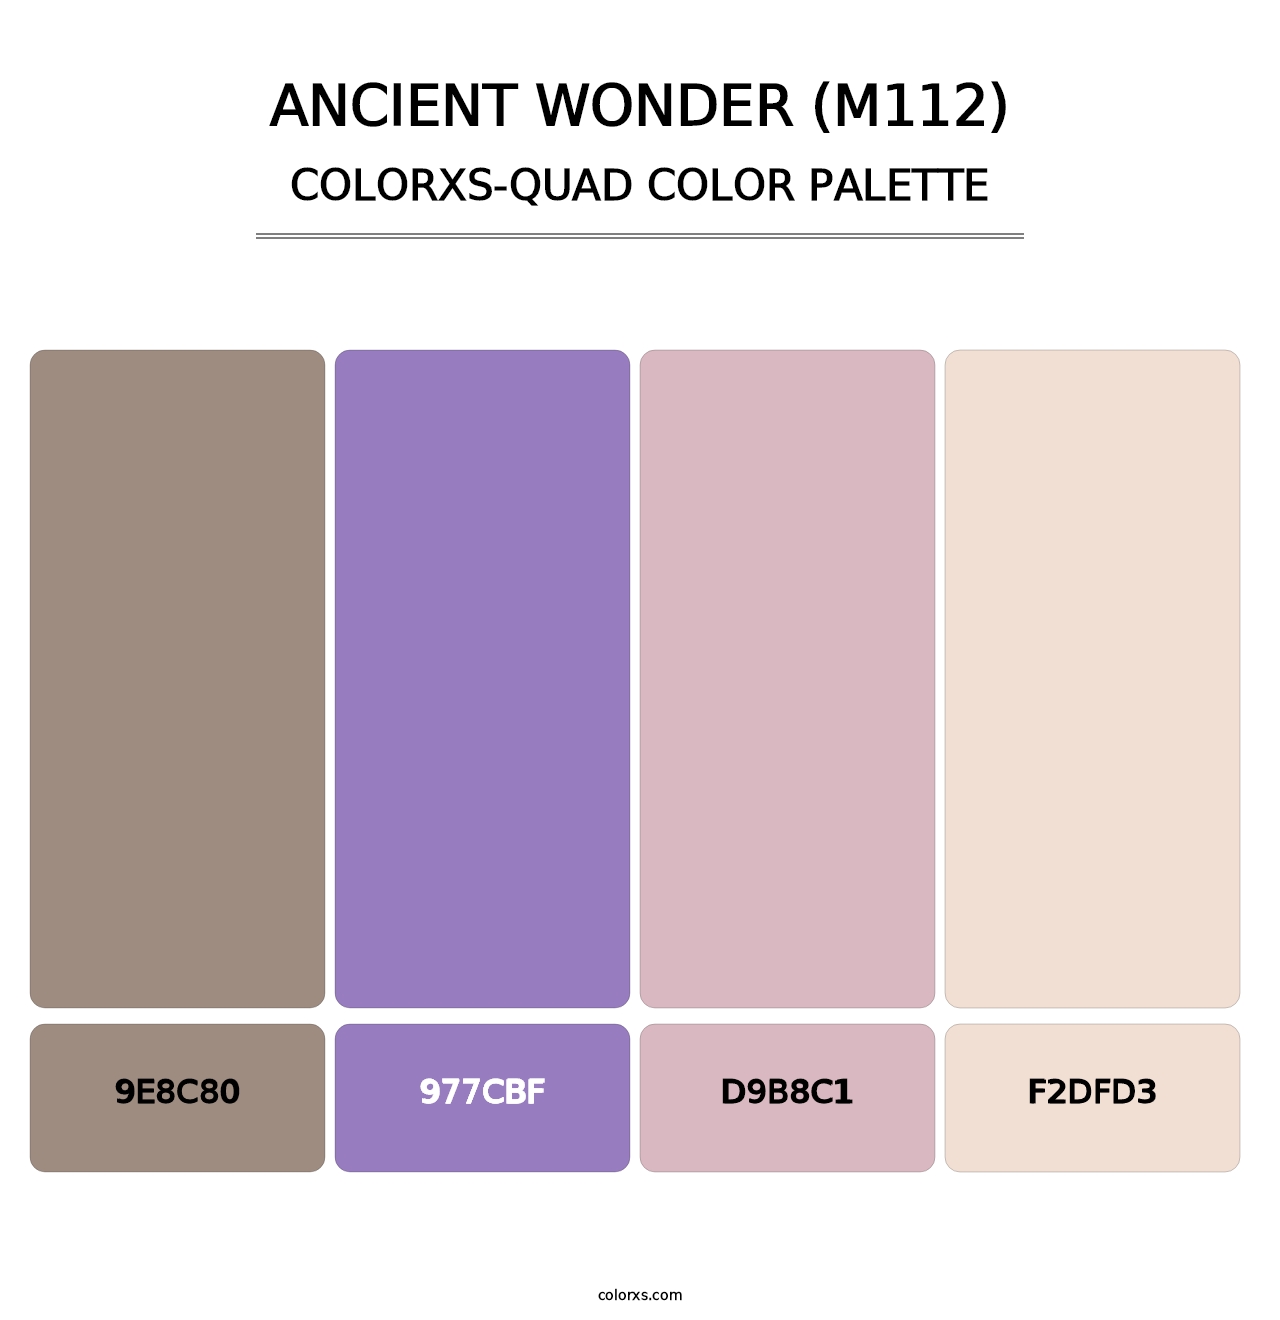 Ancient Wonder (M112) - Colorxs Quad Palette